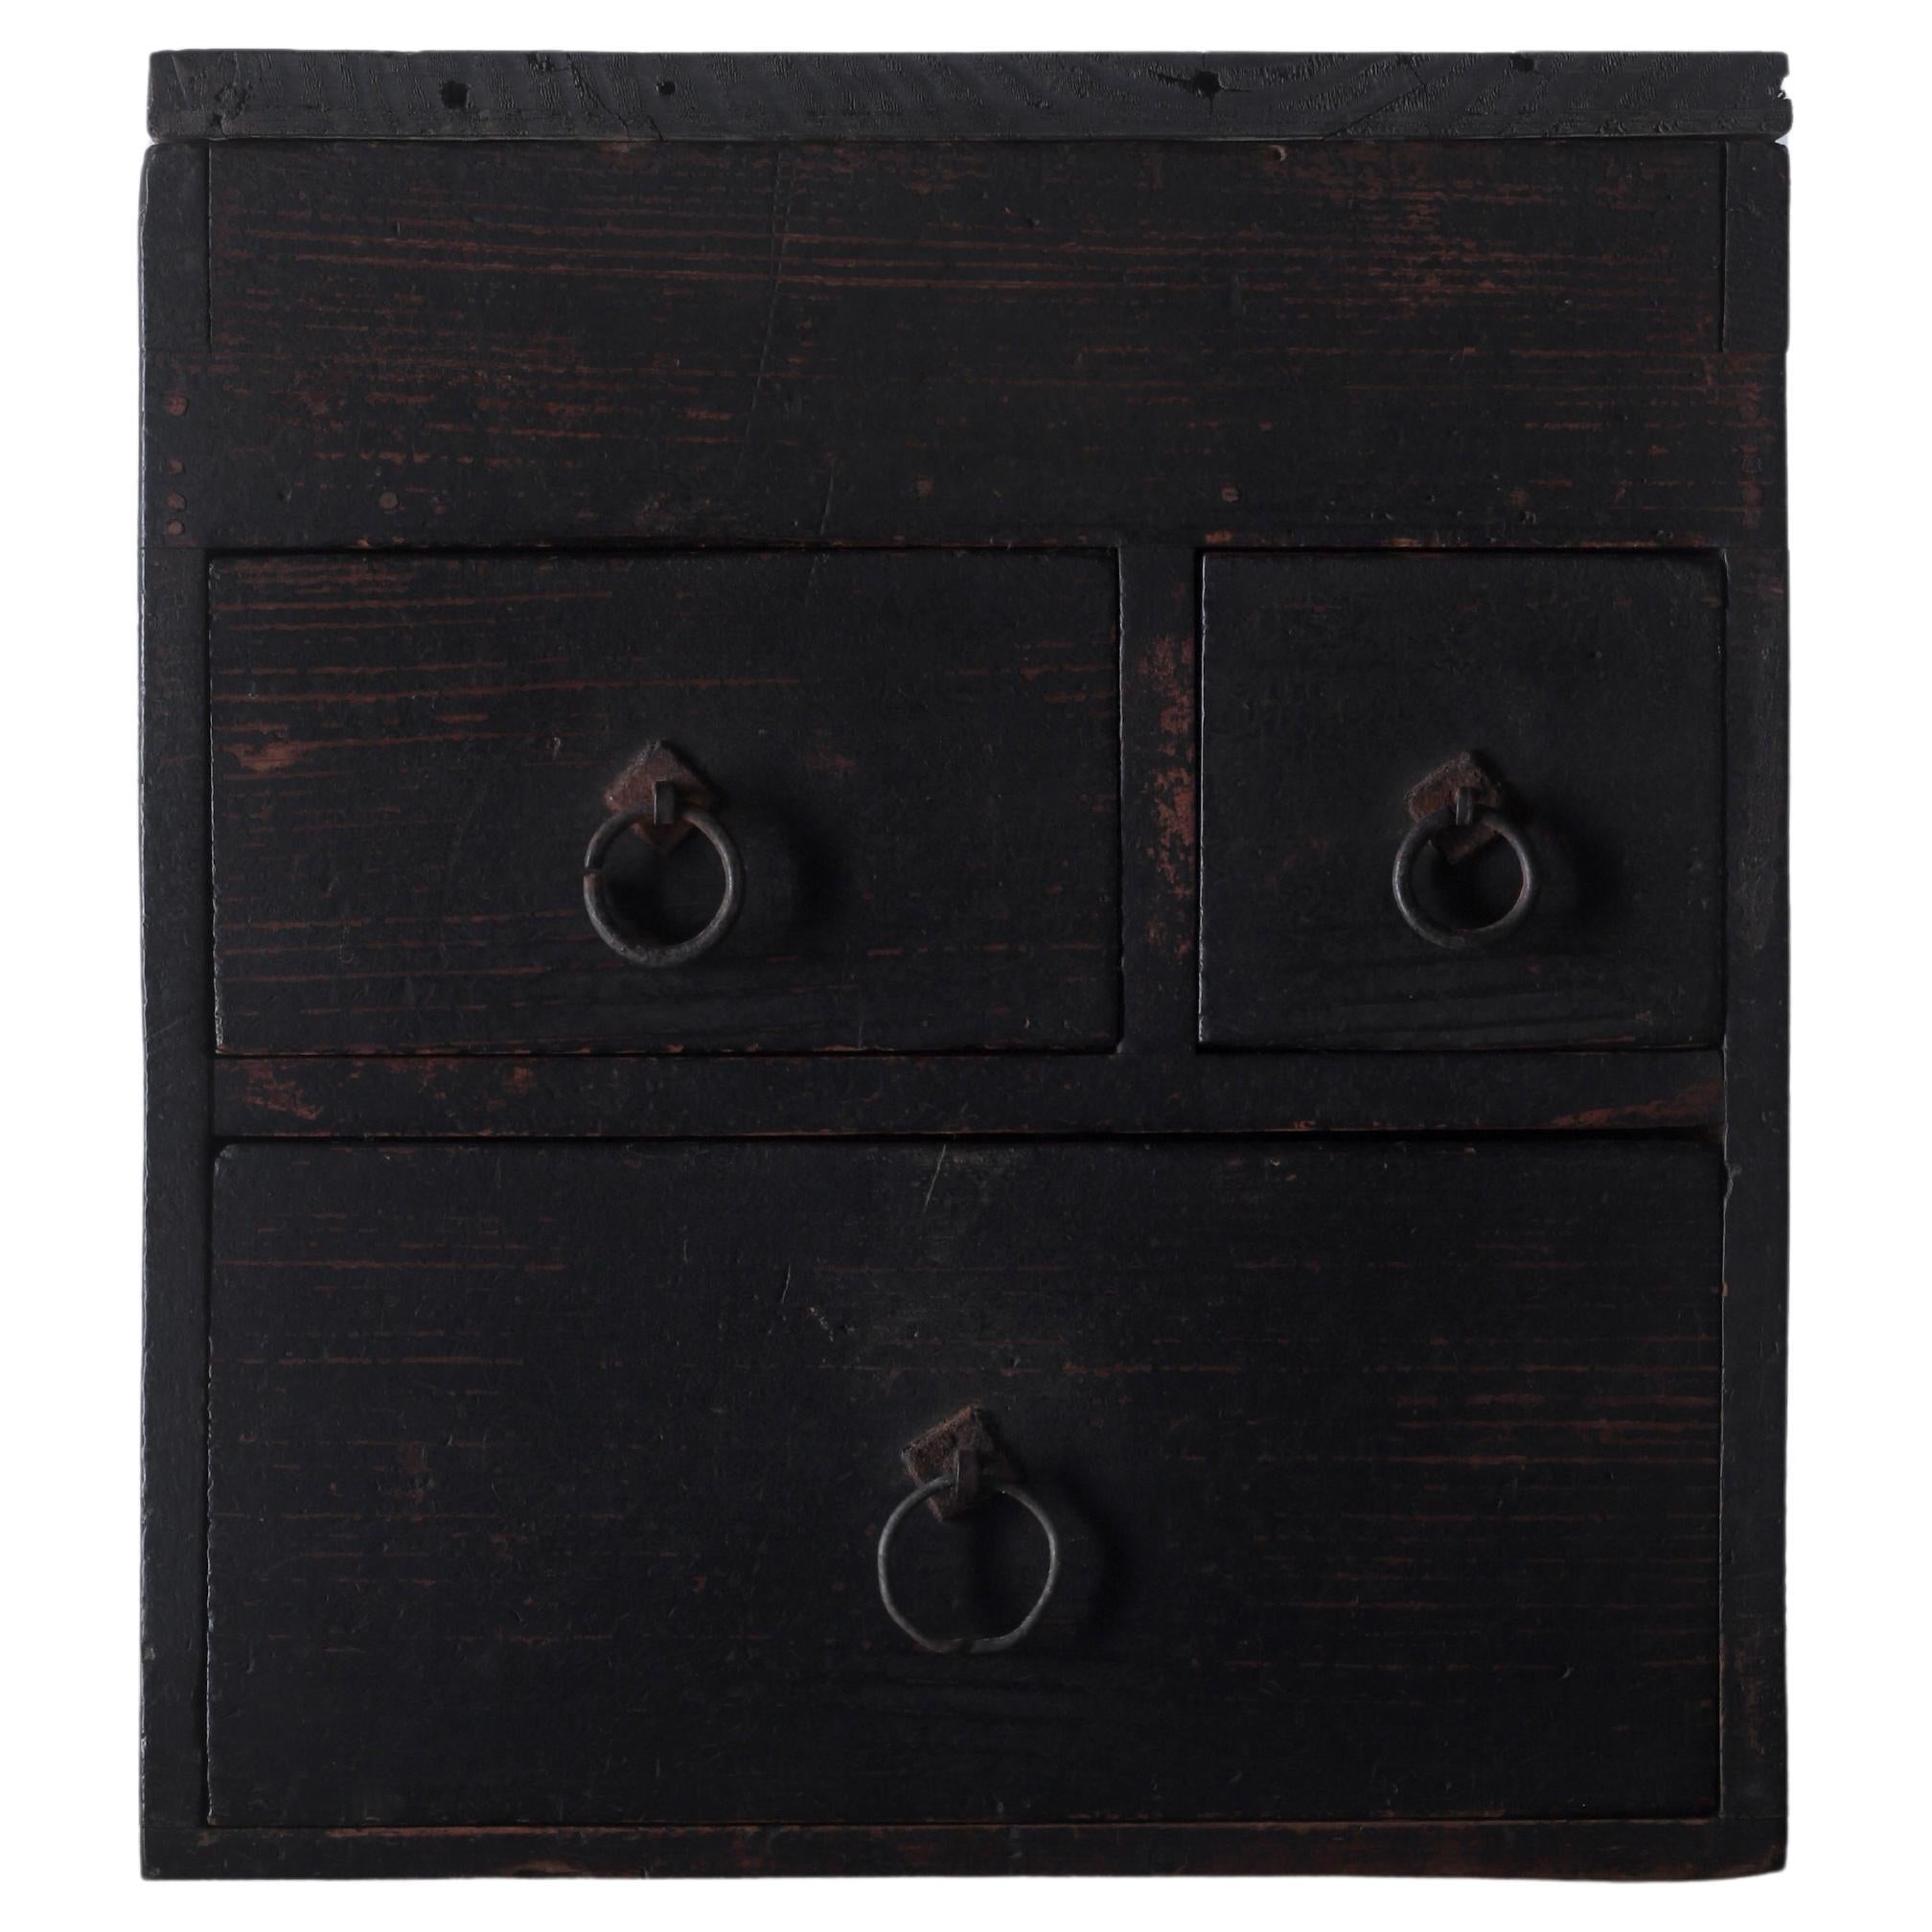 Japanese Antique Black Drawer / Storage / Meiji Period WabiSabi For Sale